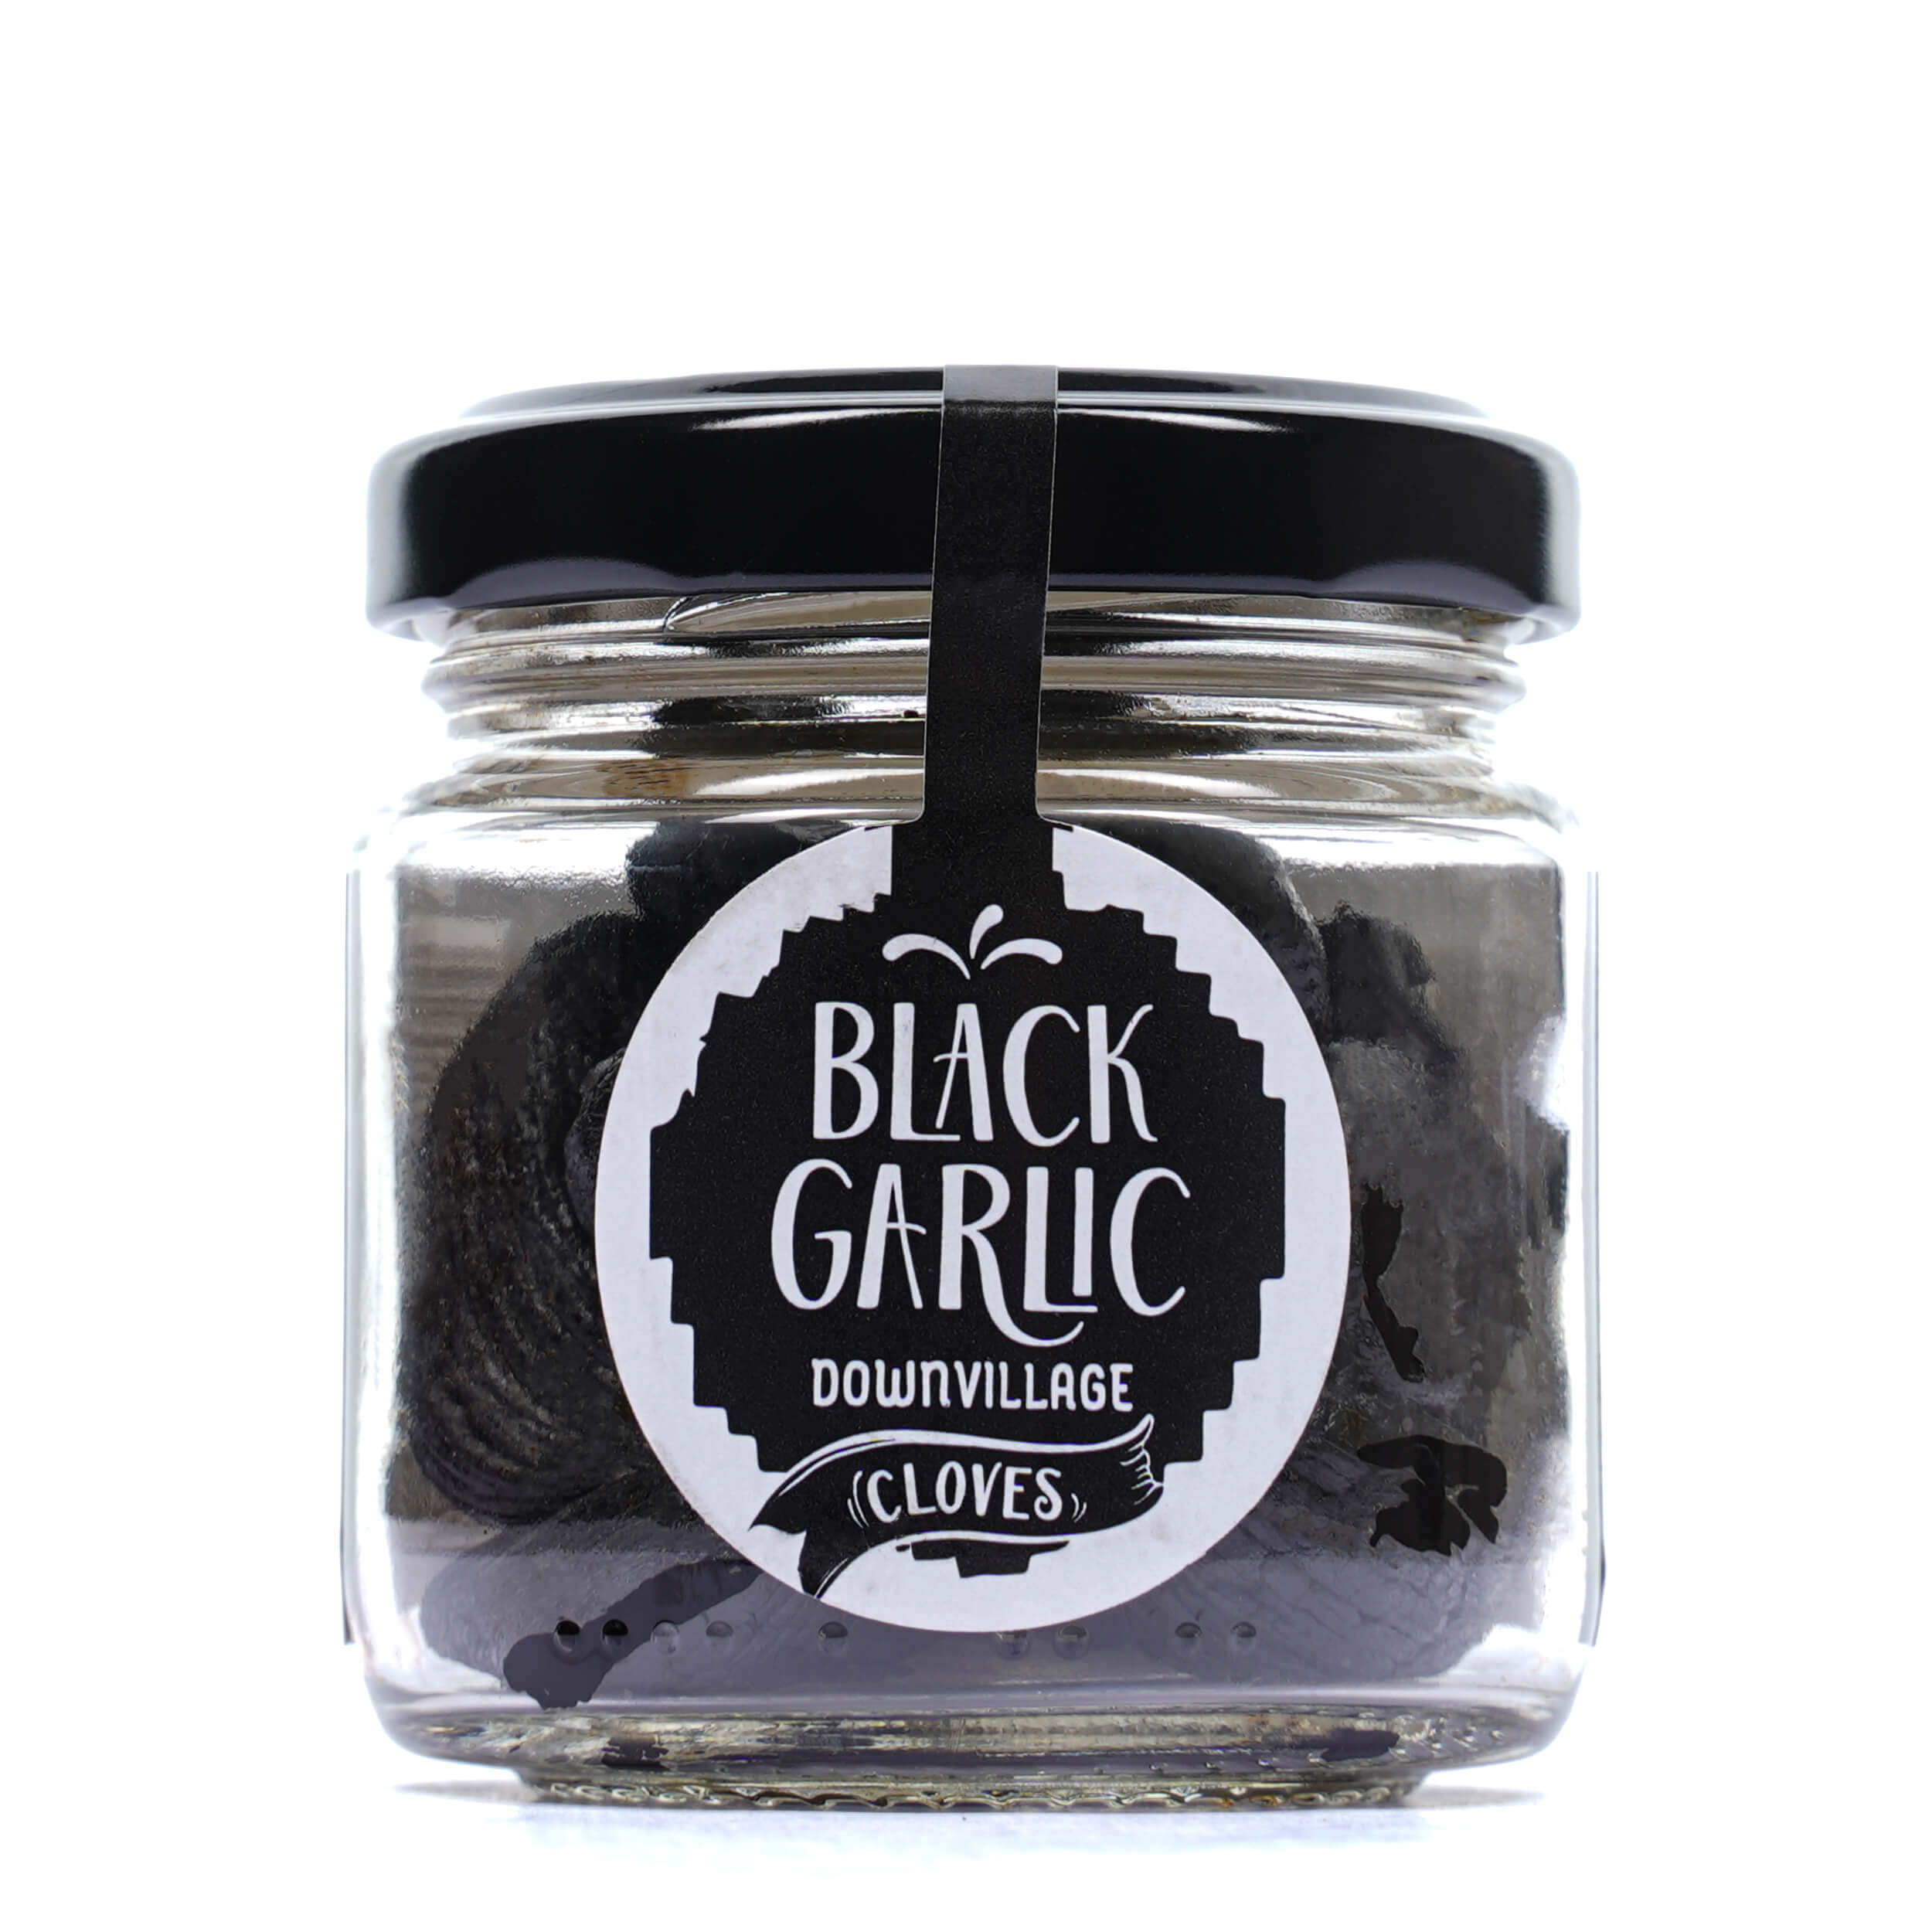 Black Garlic Cloves 'Black Garlic Downvillage' 50gr